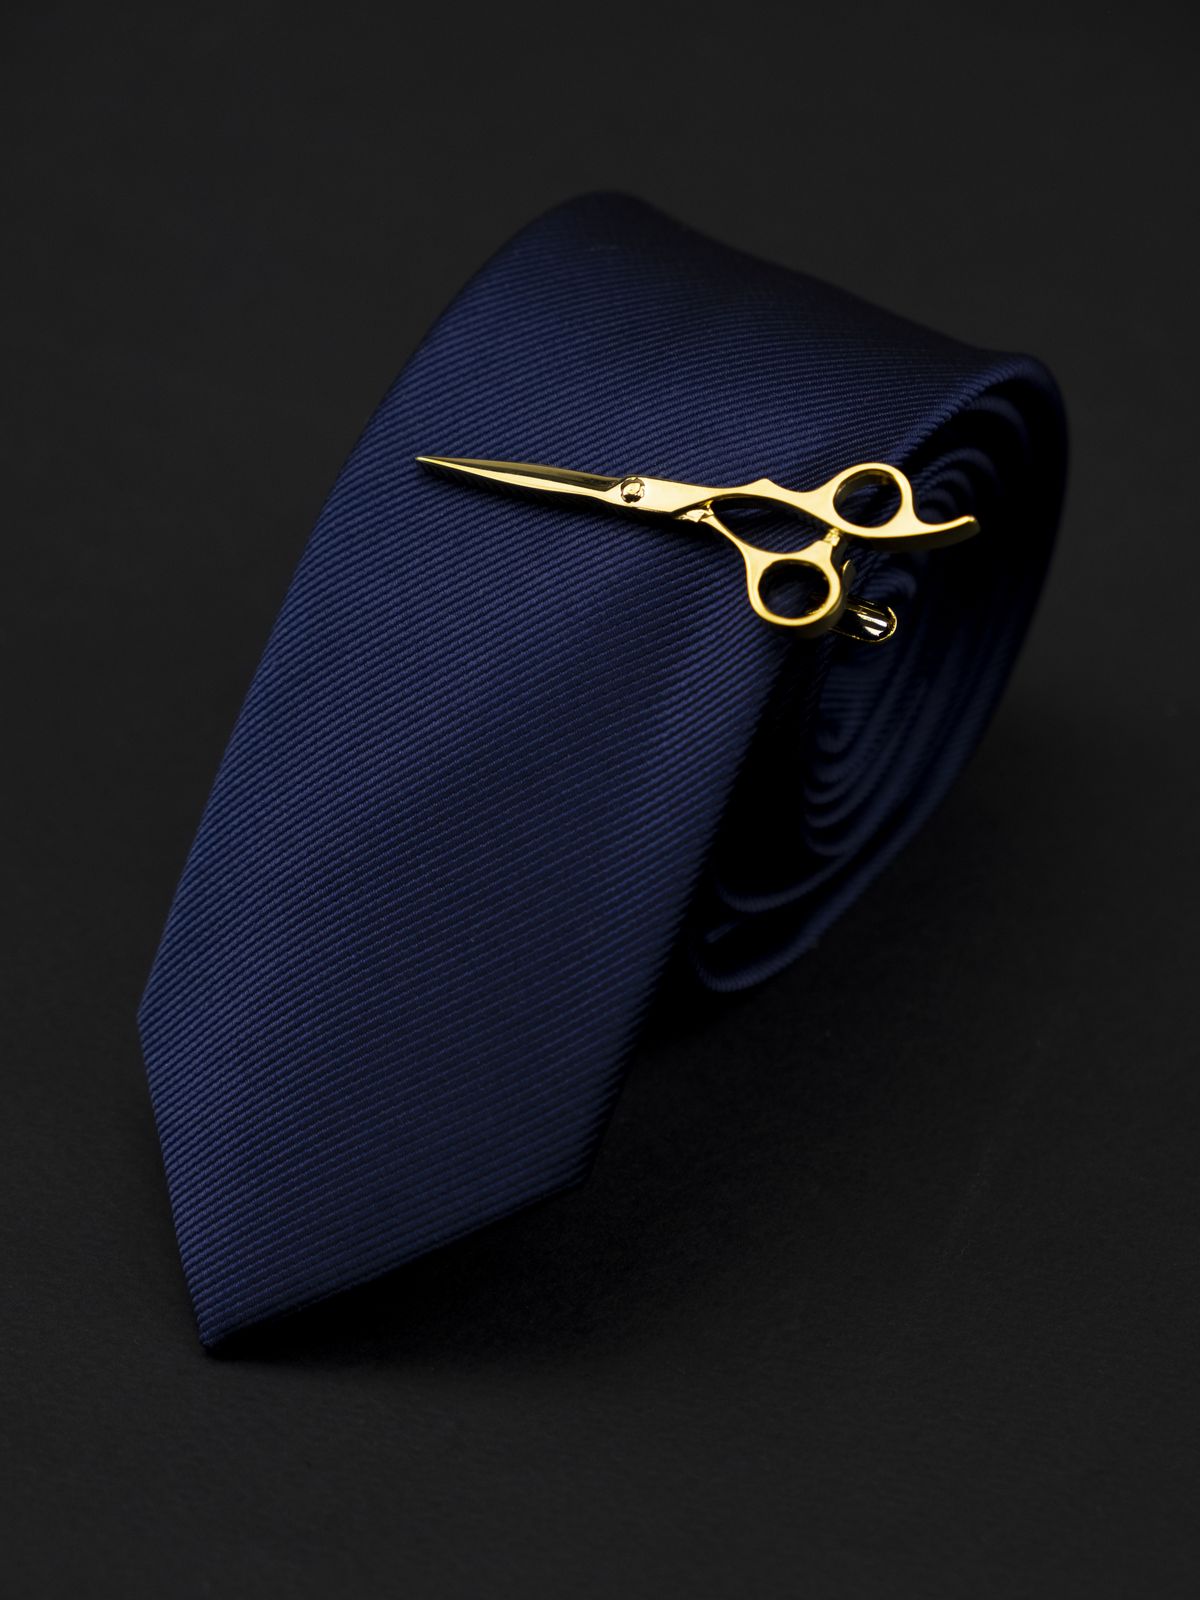 Зажим для галстука ножницы золотые  купить. Состав: Ювелирная сталь 316L, Цвет: Золотой, Габариты: 6,5 см. х 2,3 см., Вес: 12; 